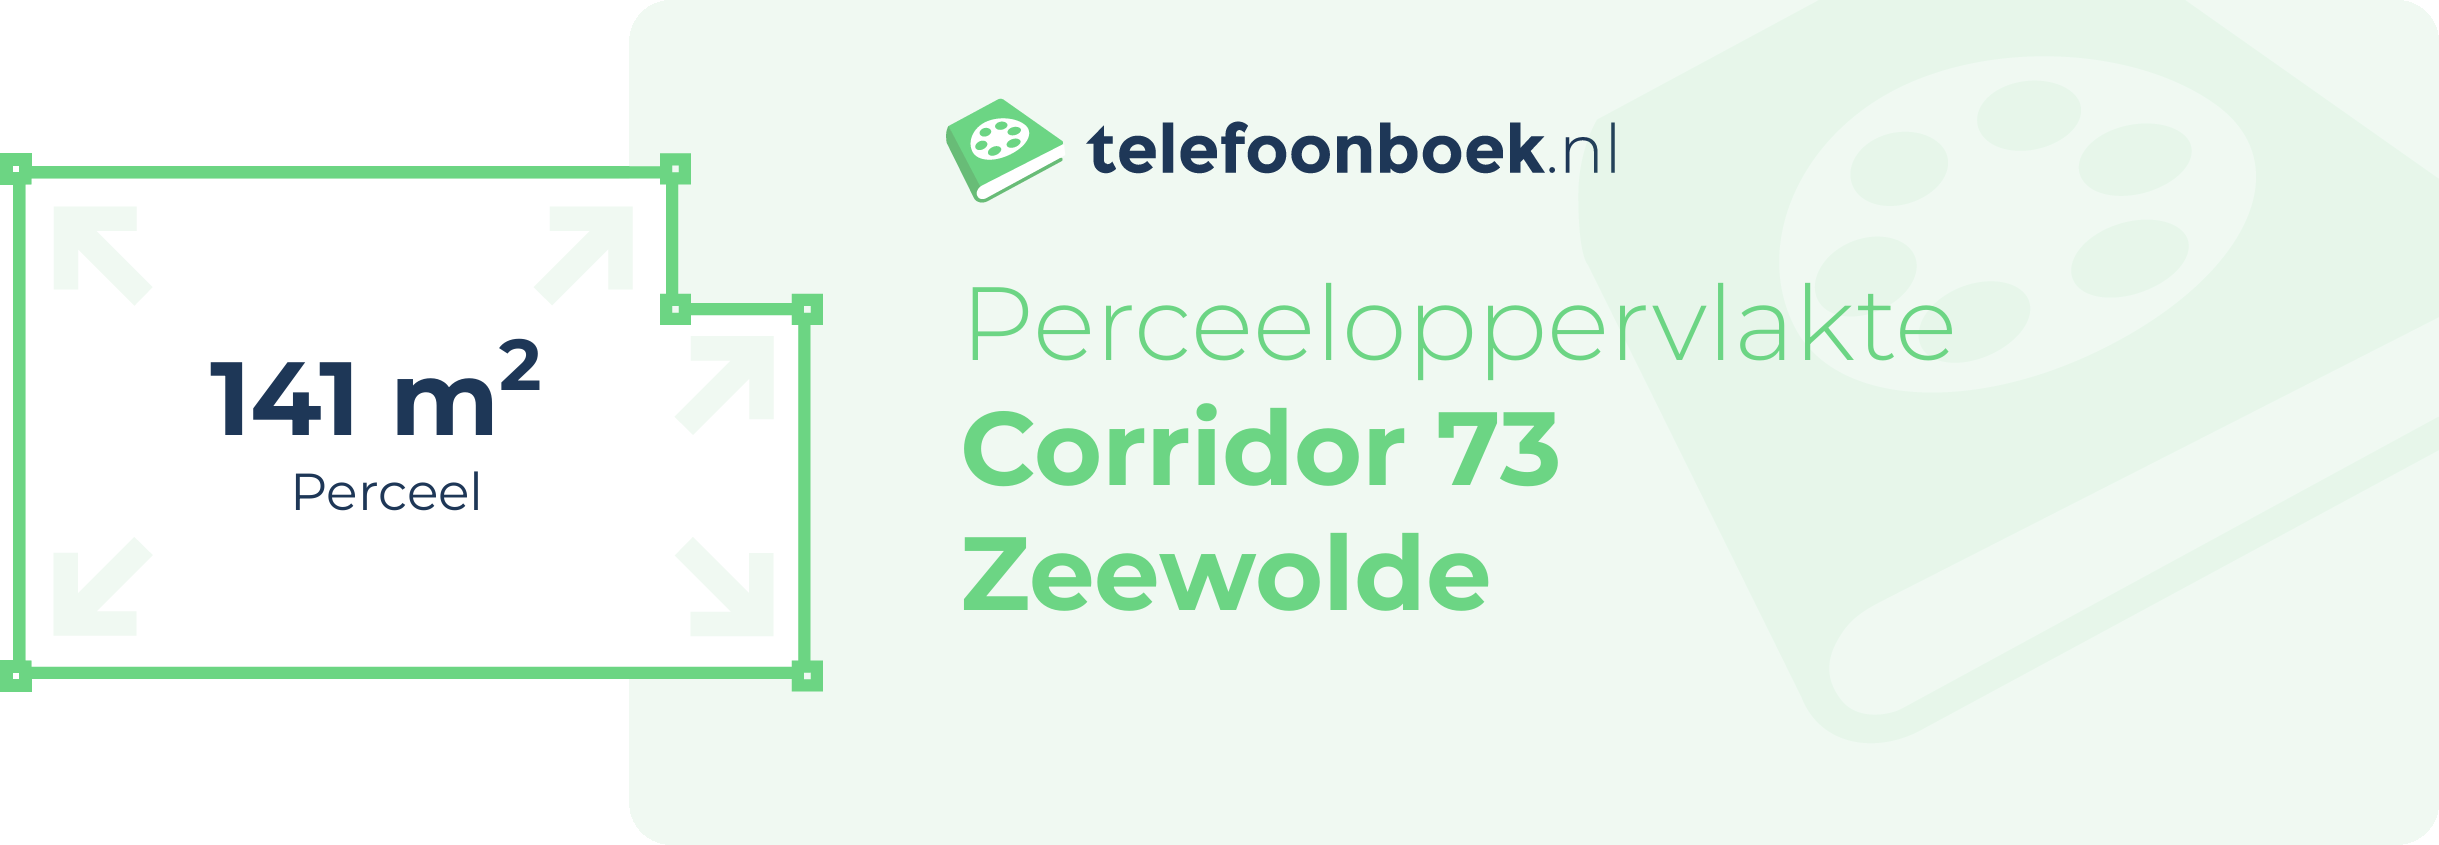 Perceeloppervlakte Corridor 73 Zeewolde